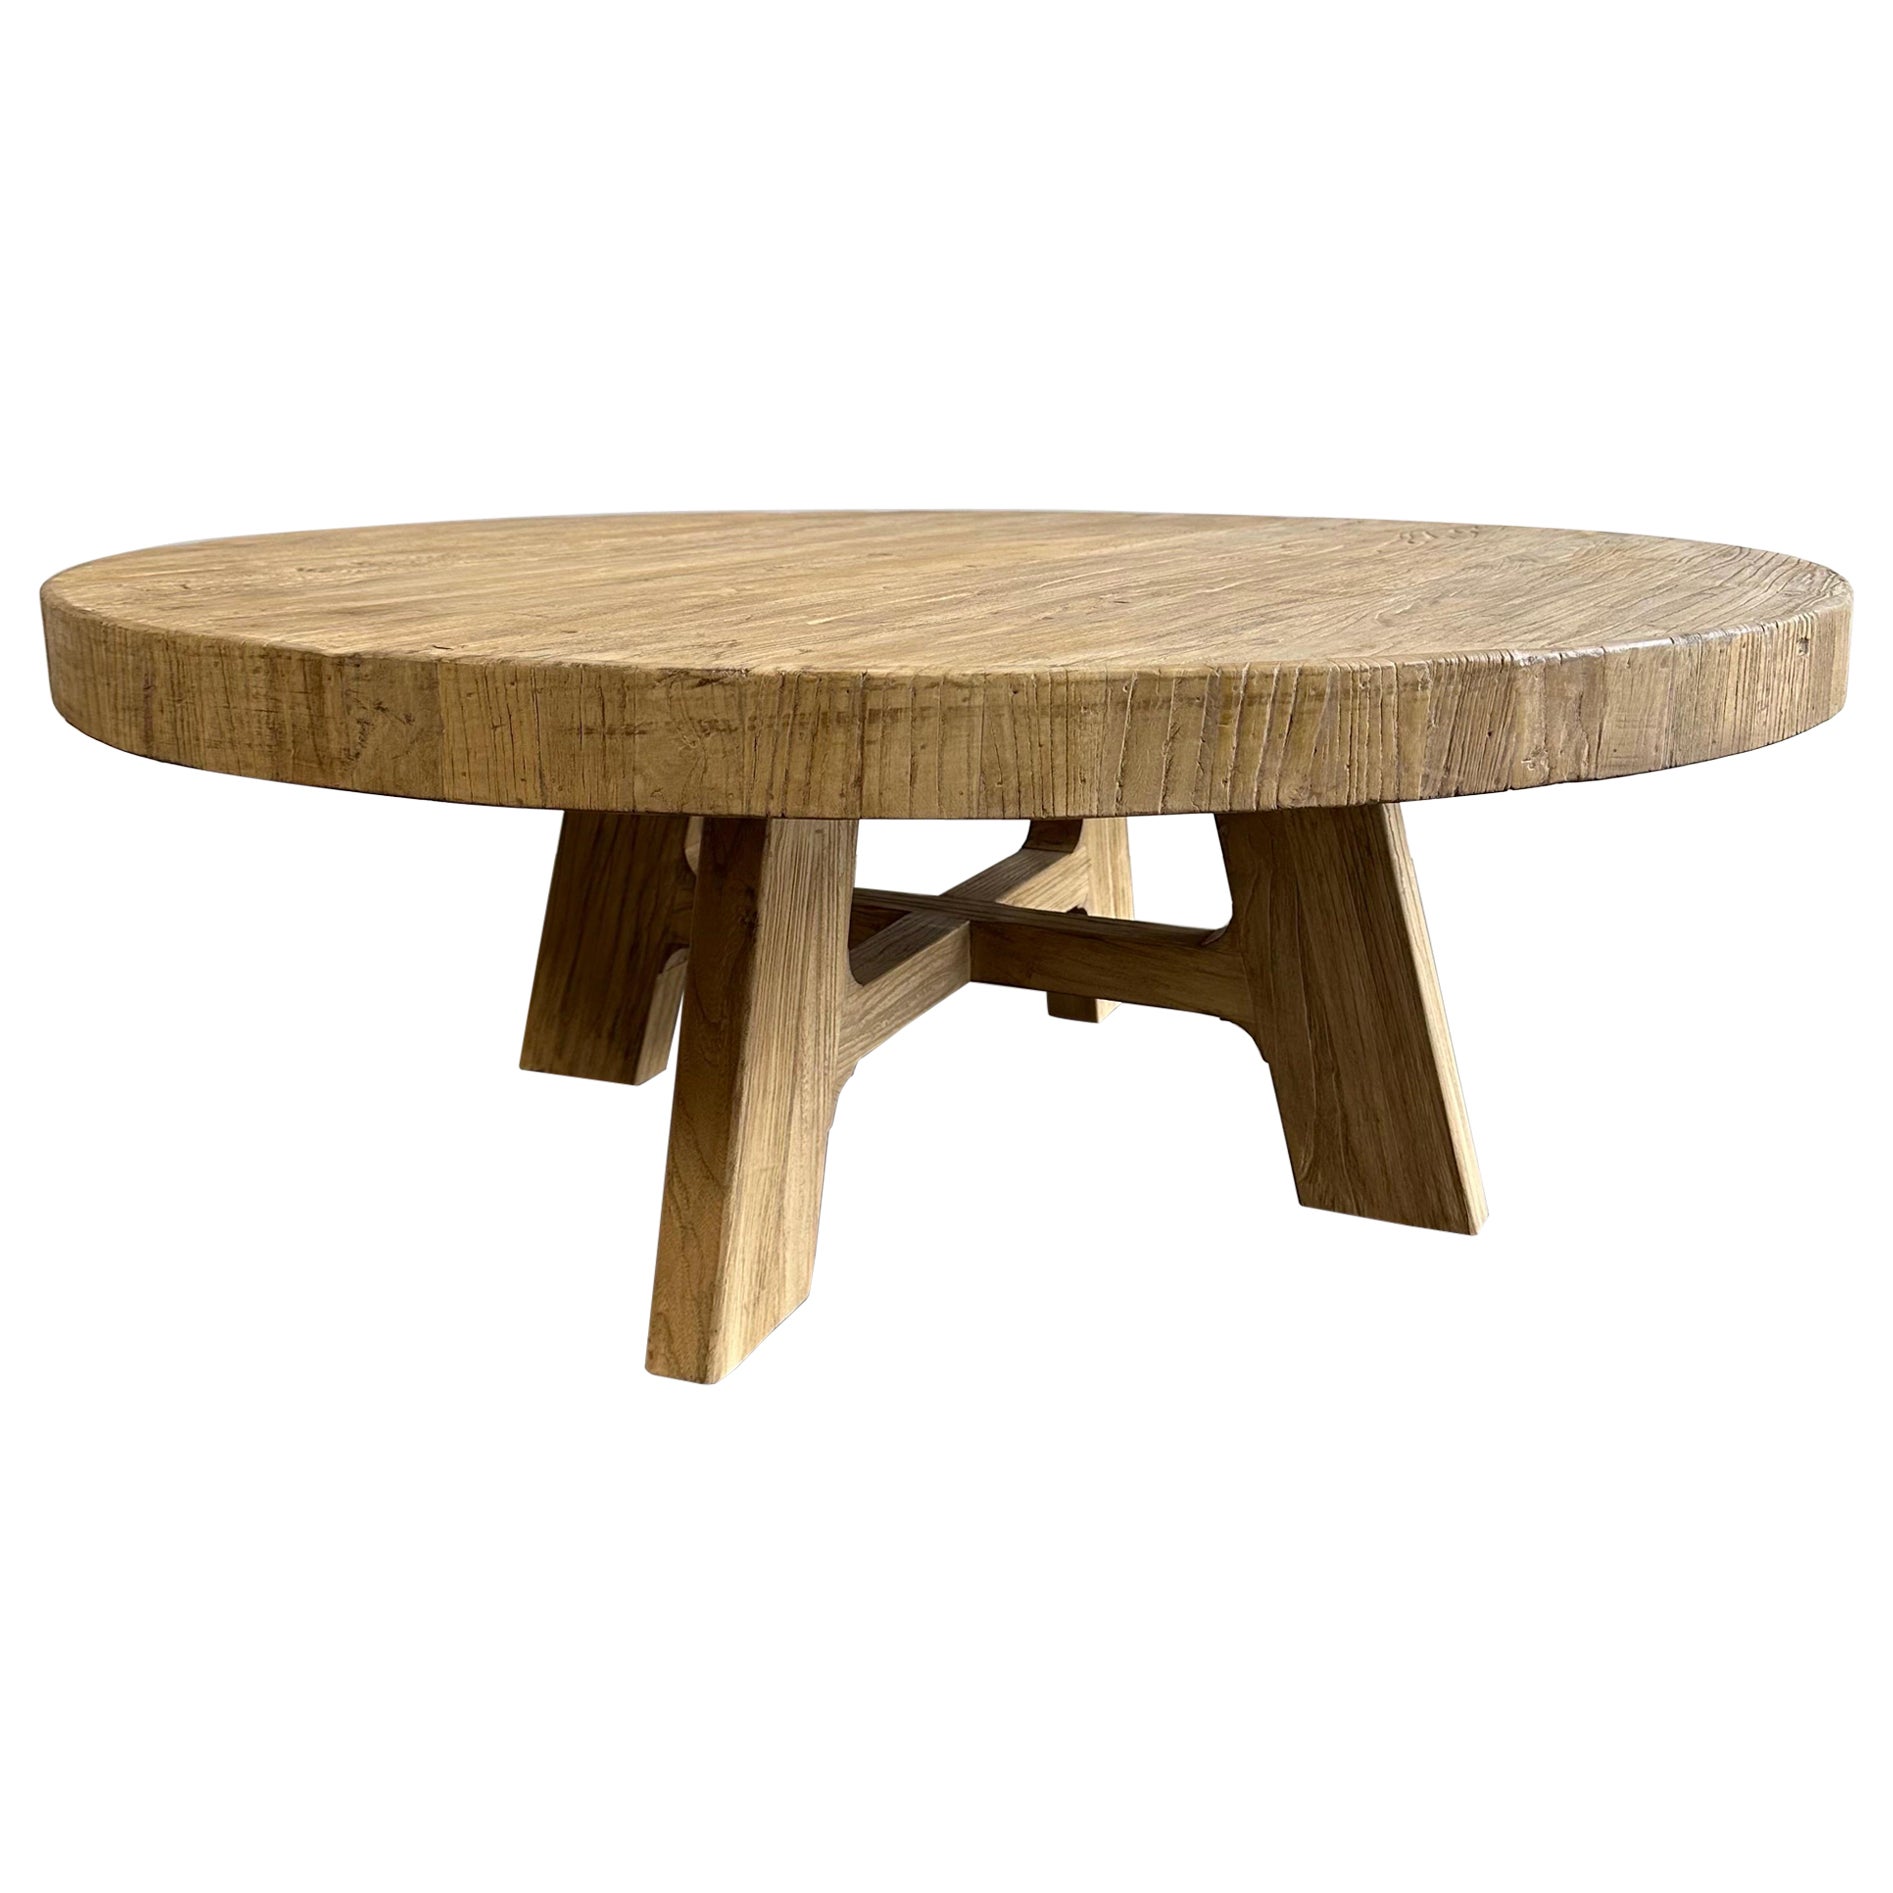 Table basse ronde en bois d'orme récupéré sur mesure